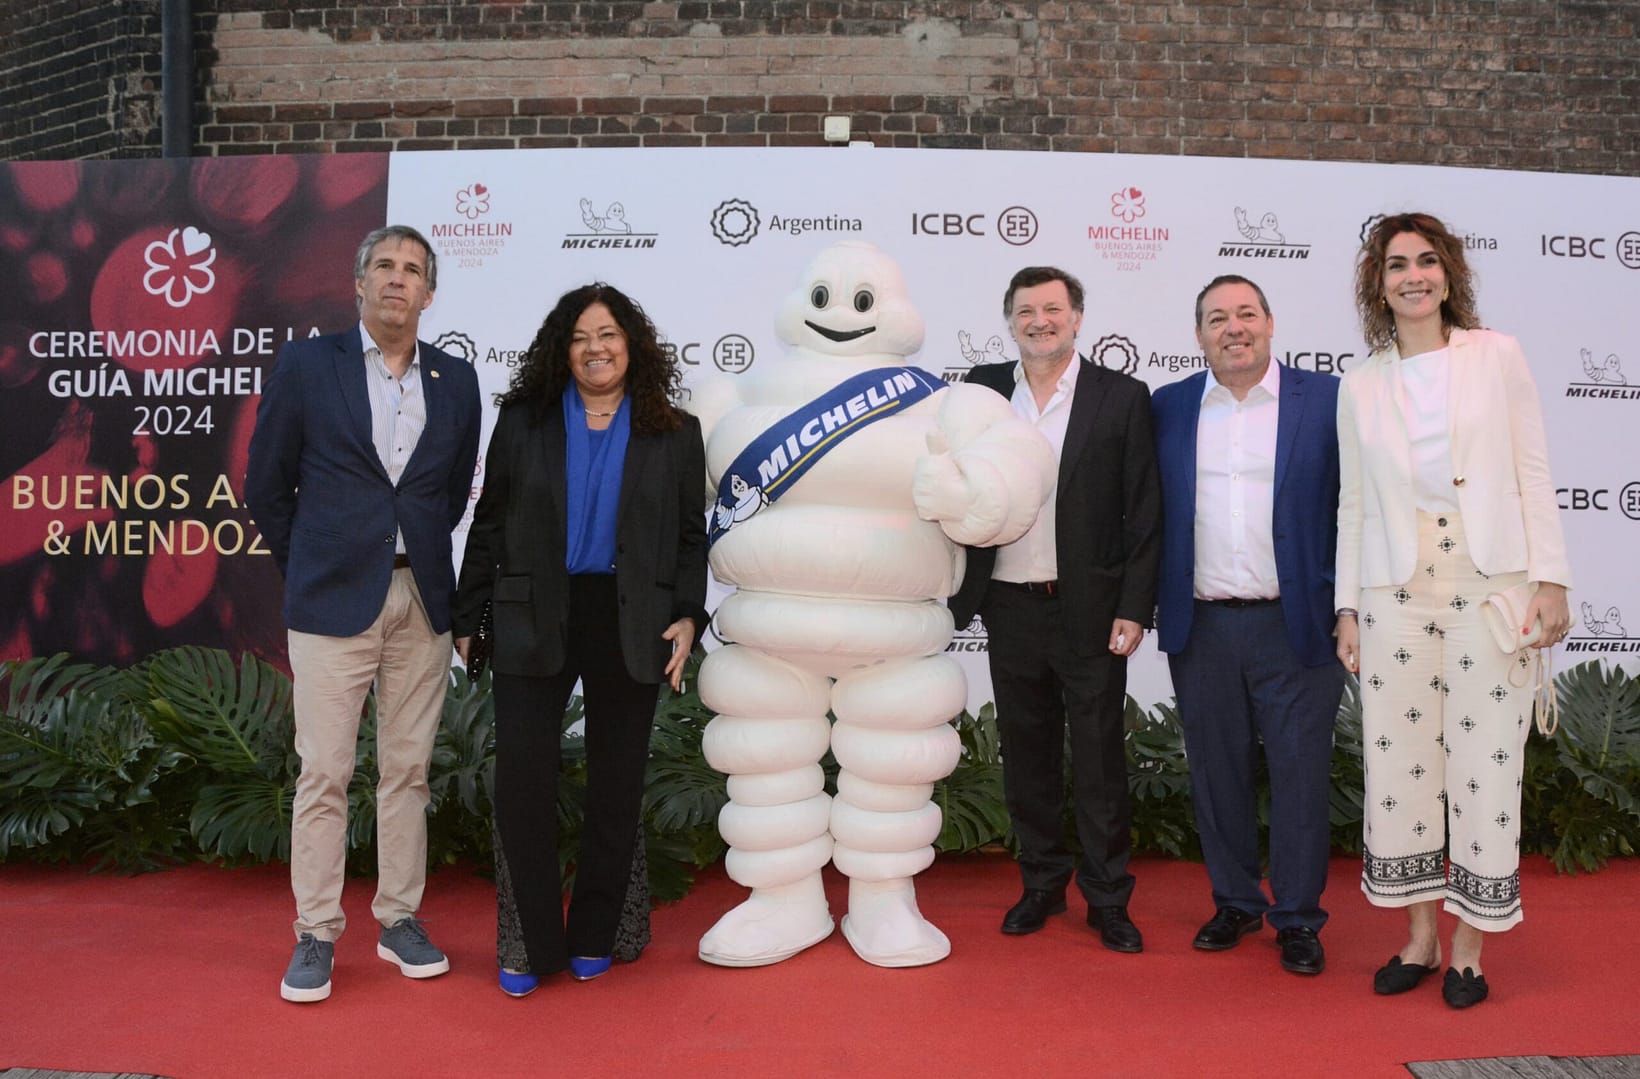 Triunfo culinario en Mendoza: 7 estrellas Michelin iluminan la gastronomía mendocina